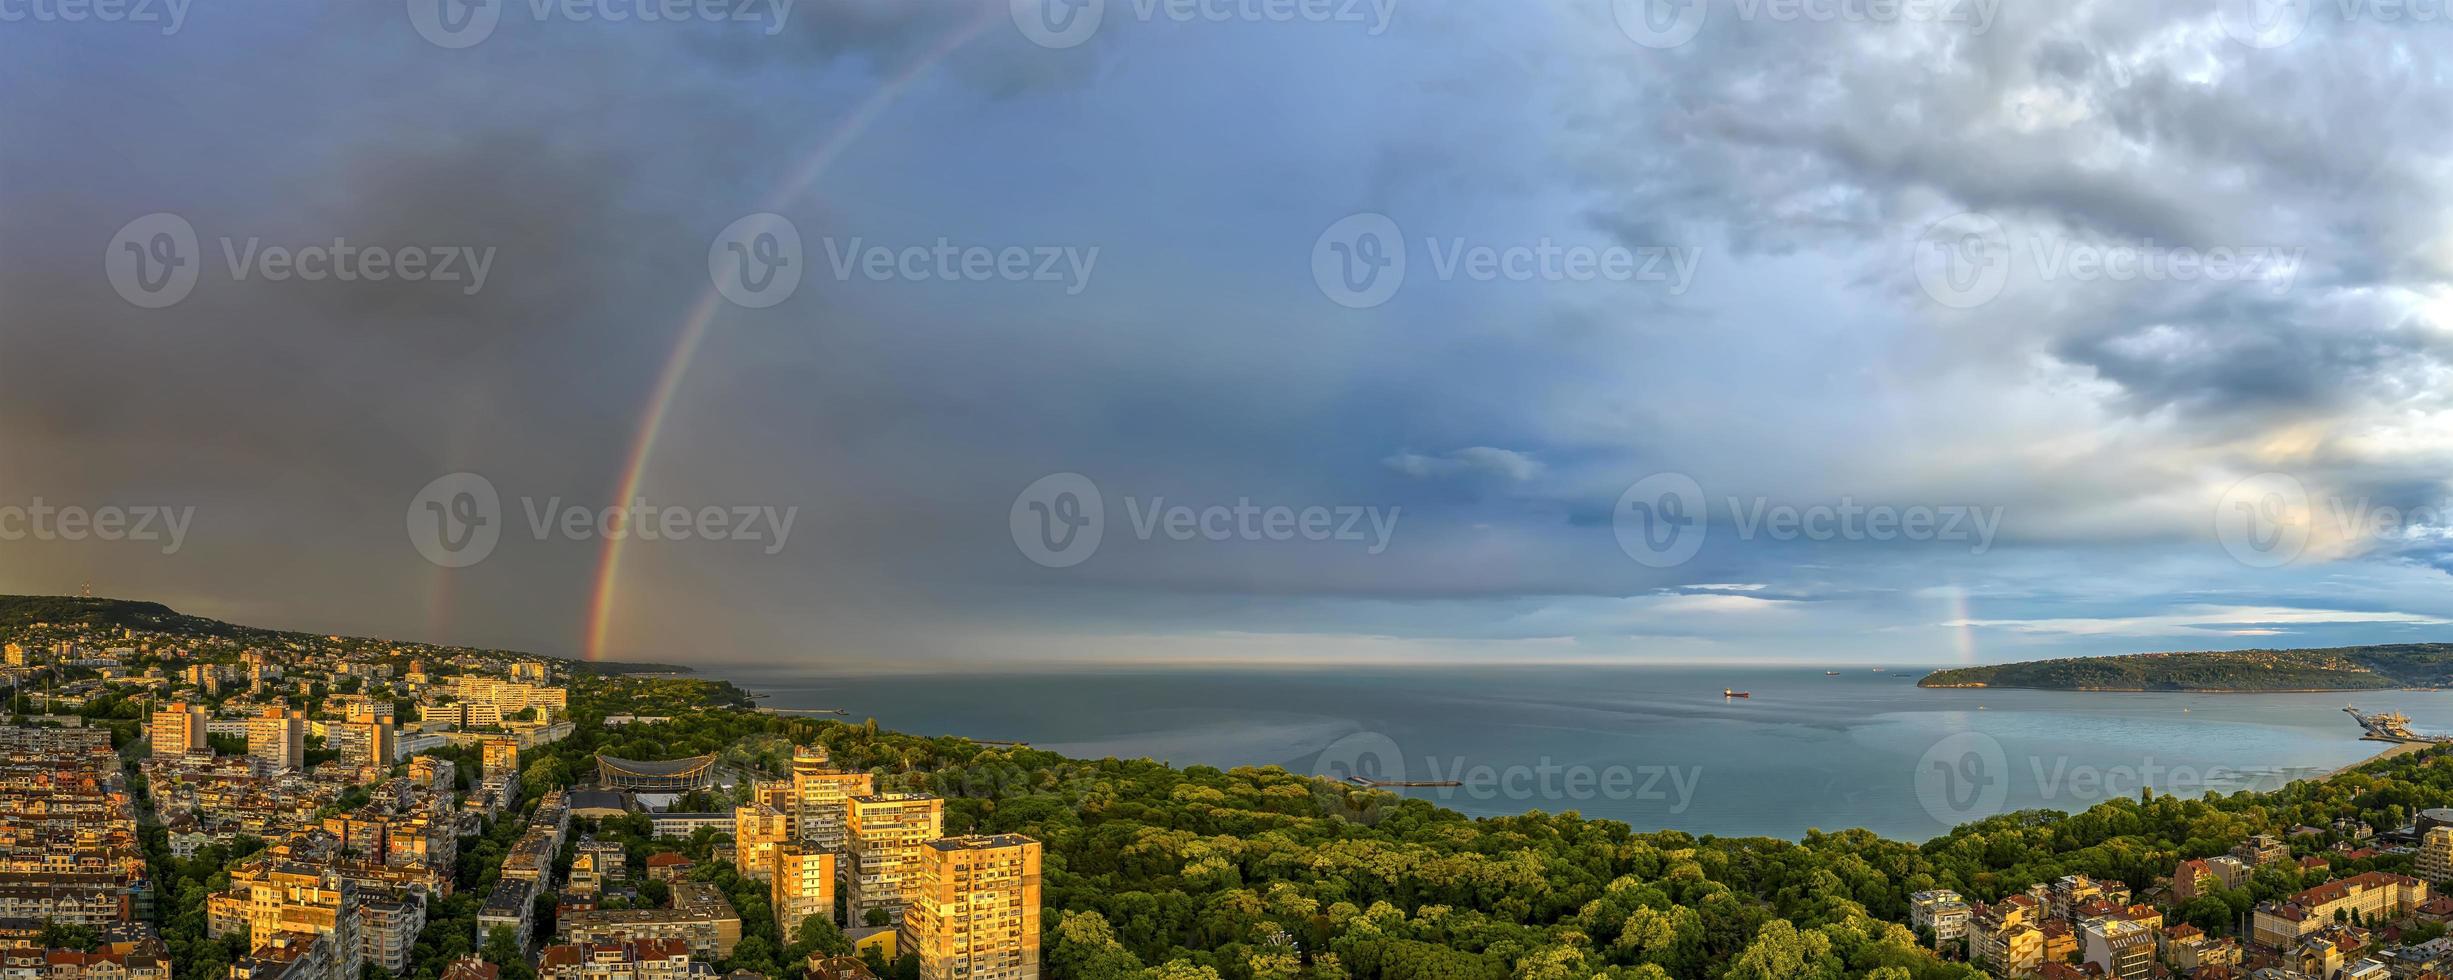 sbalorditivo panorama di un' grande arcobaleno al di sopra di il mare e costa dopo il pioggia foto